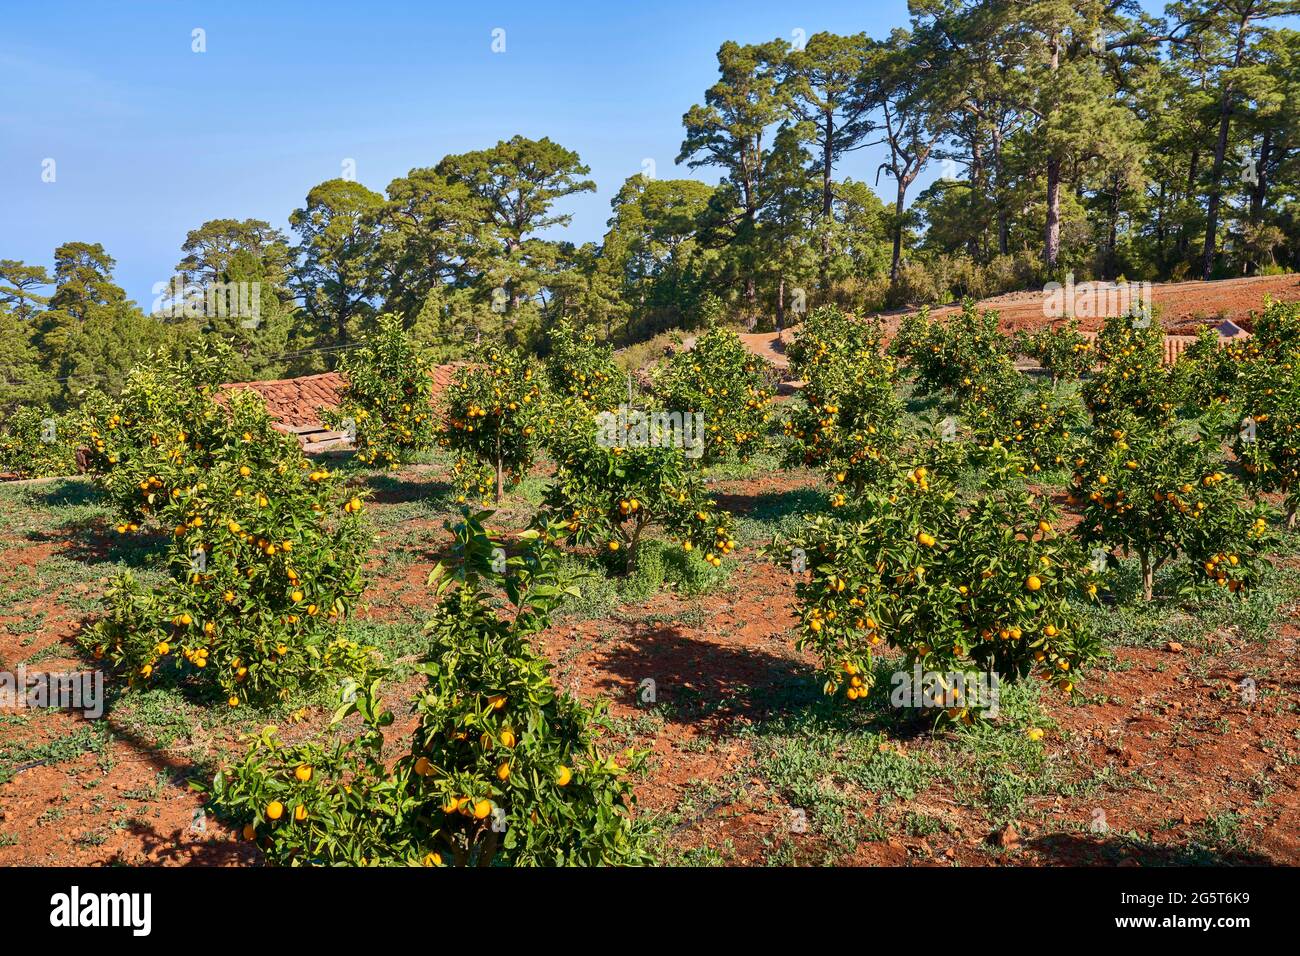 La vecchia pineta alta è stata tagliata per piantagione con agrumi, Isole Canarie, la Palma, Punta Gorda Foto Stock